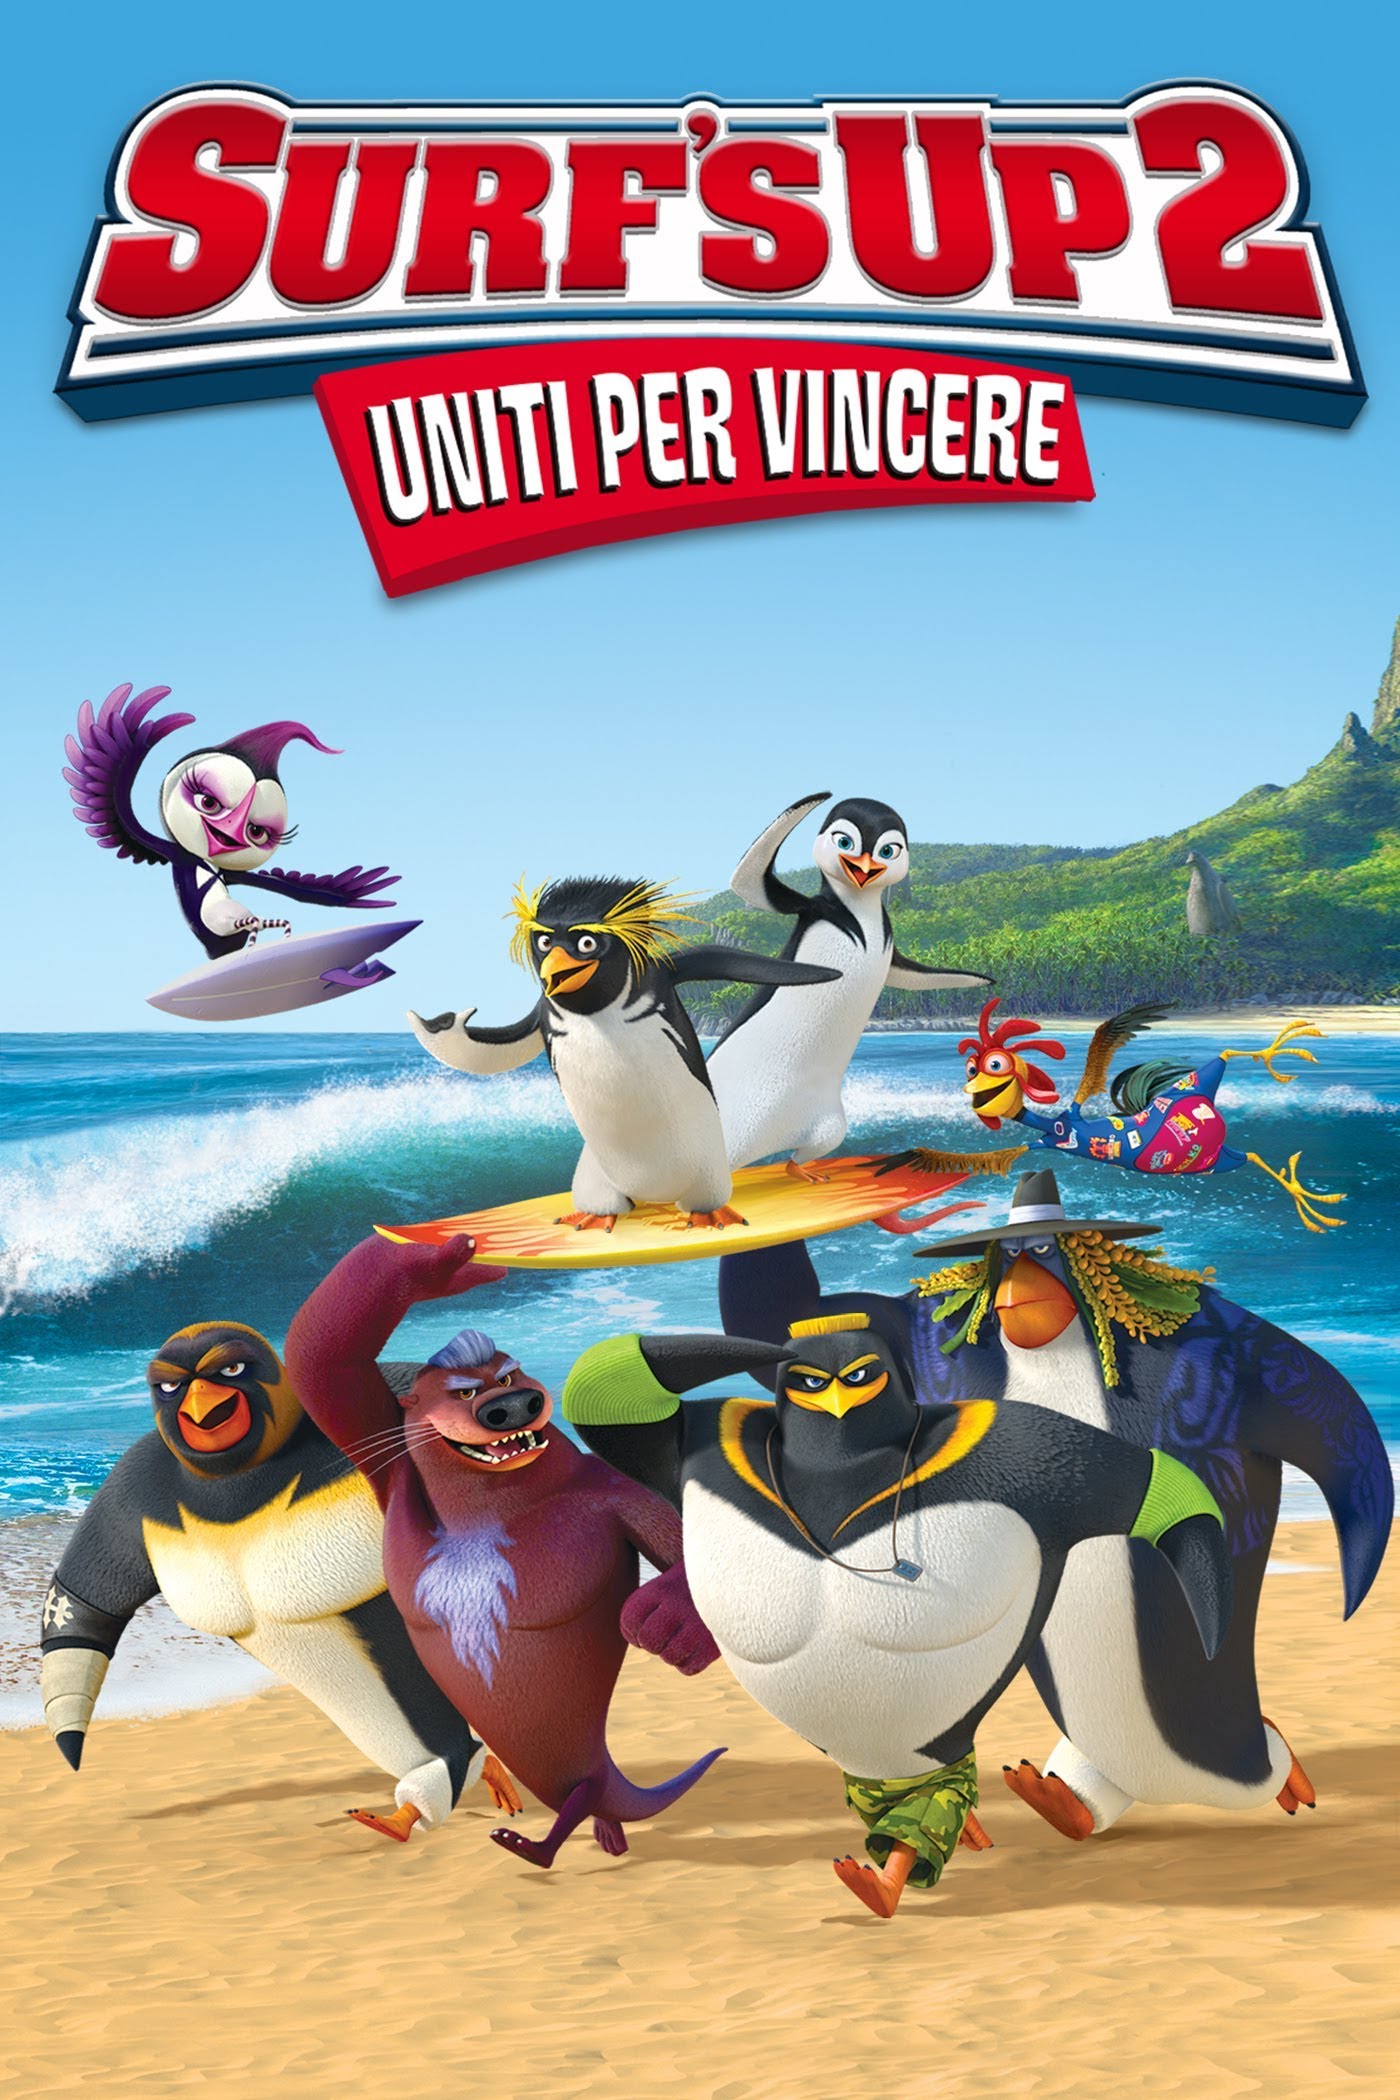 Surf’s up 2: Uniti per vincere [HD] (2017)